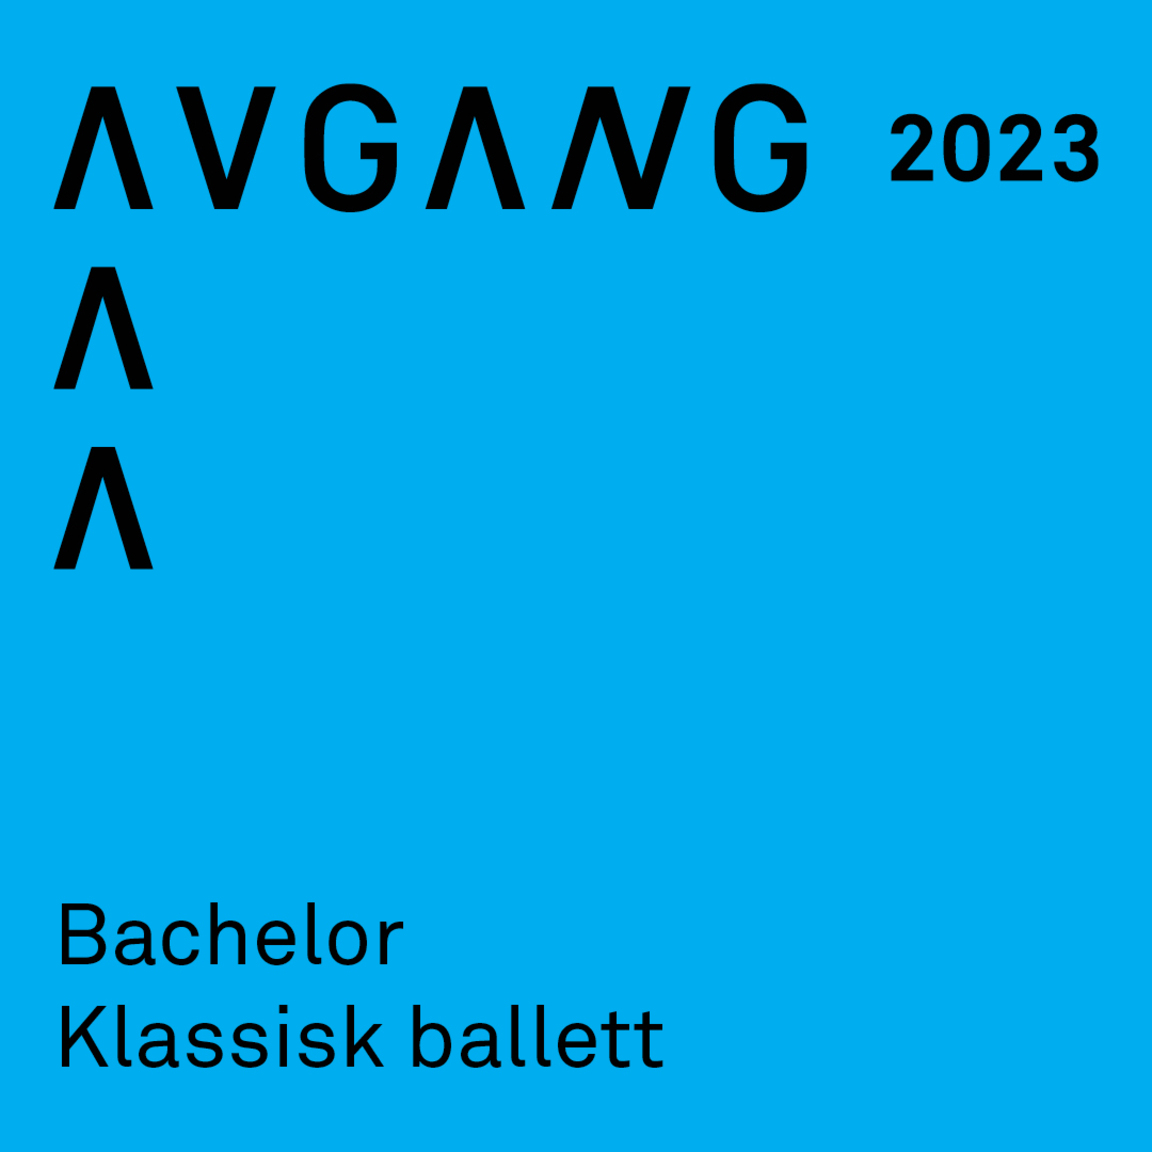 Avgang 2023: Bachelor klassisk ballett